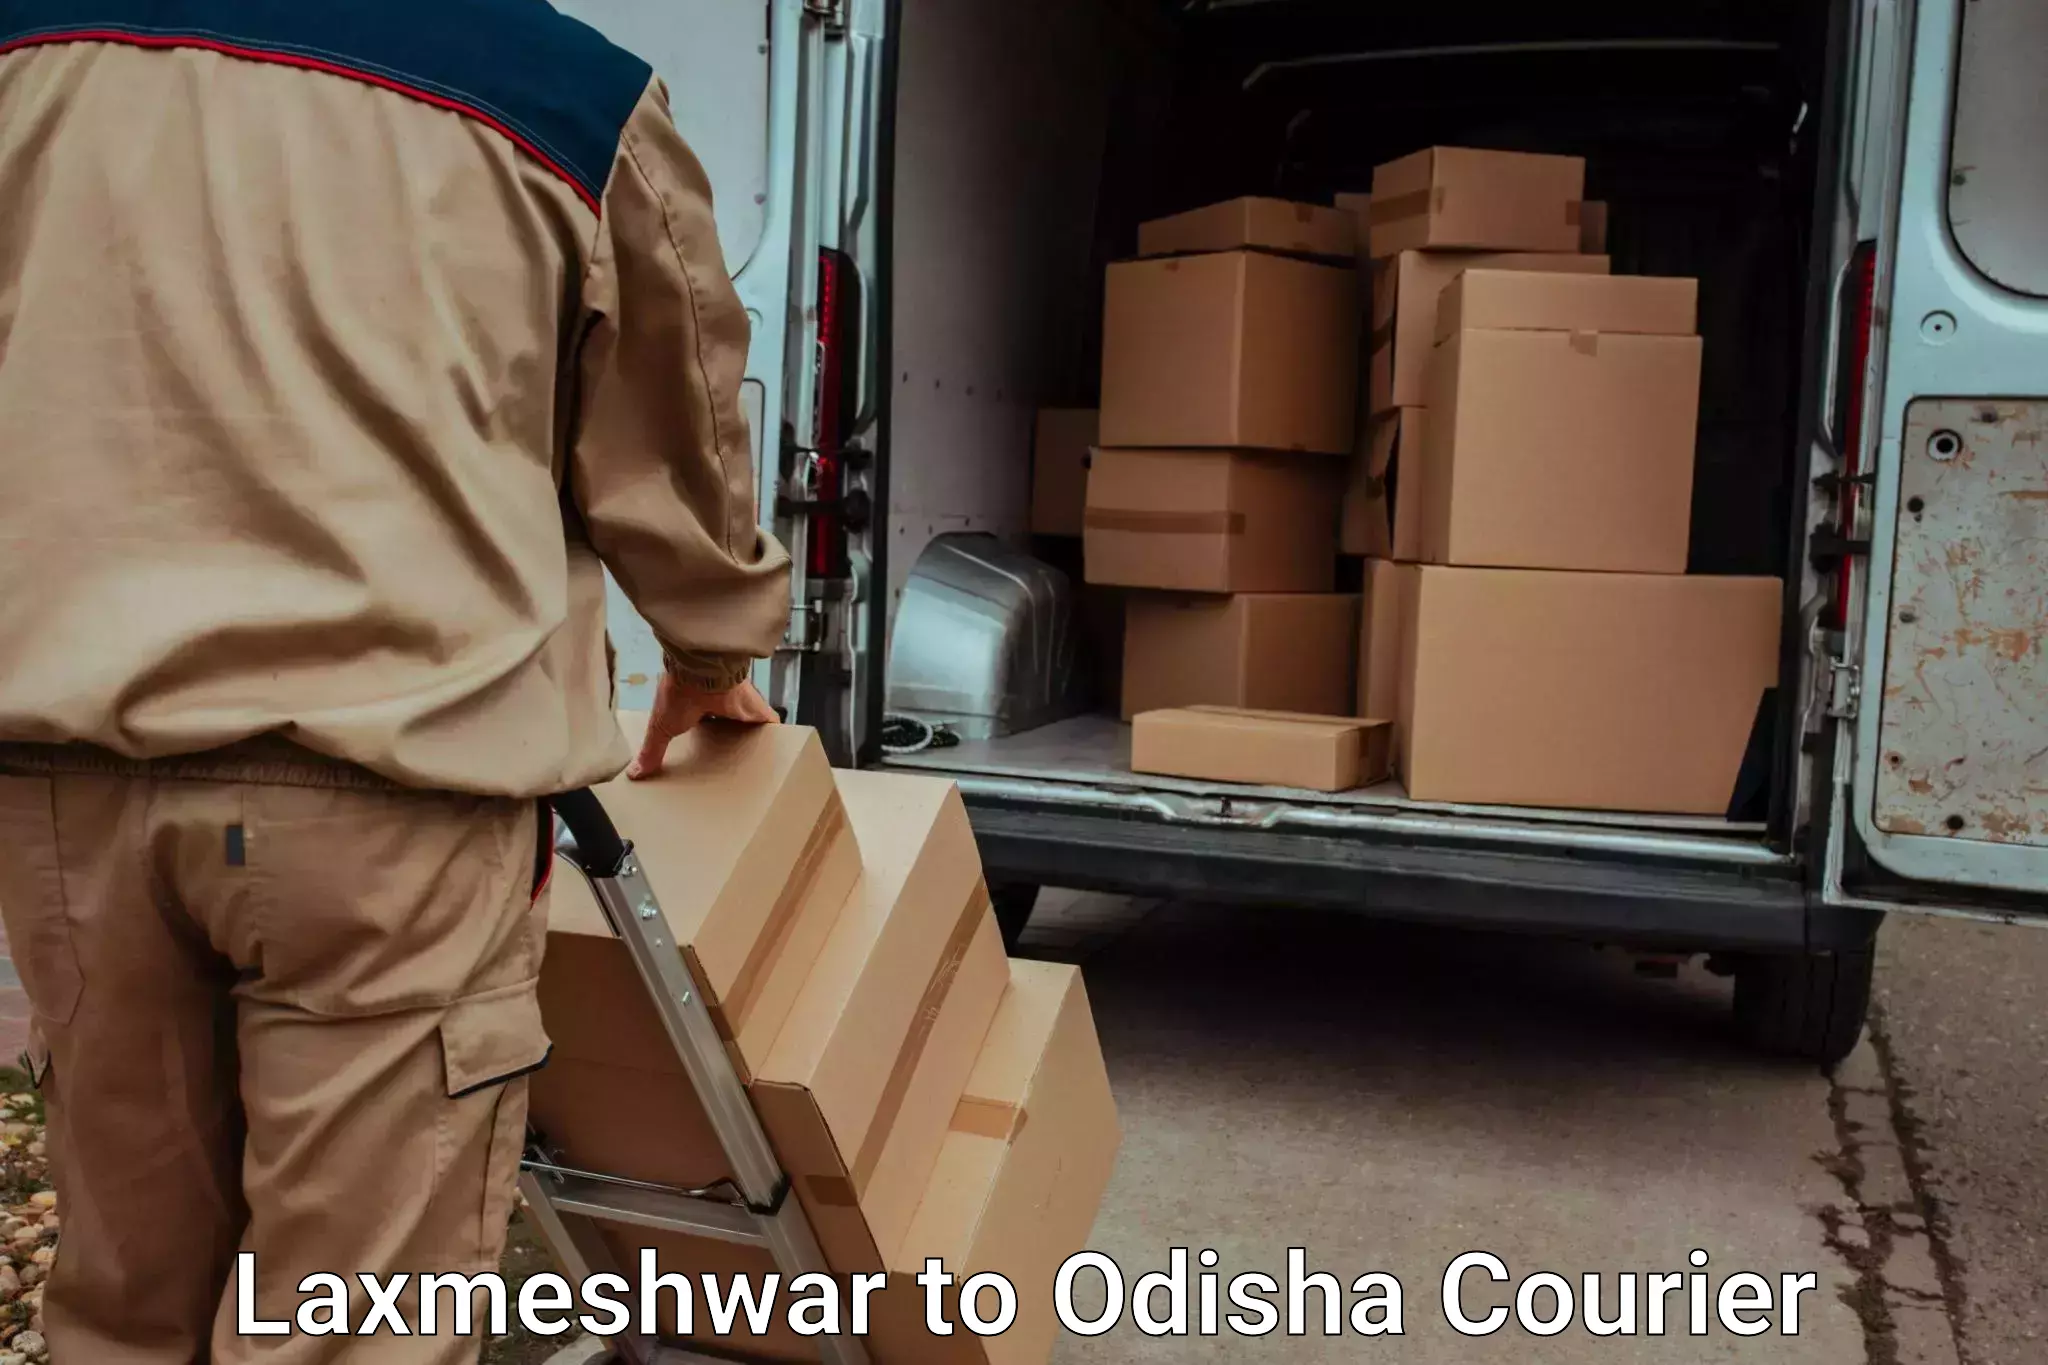 Furniture transport services Laxmeshwar to Nayagarh